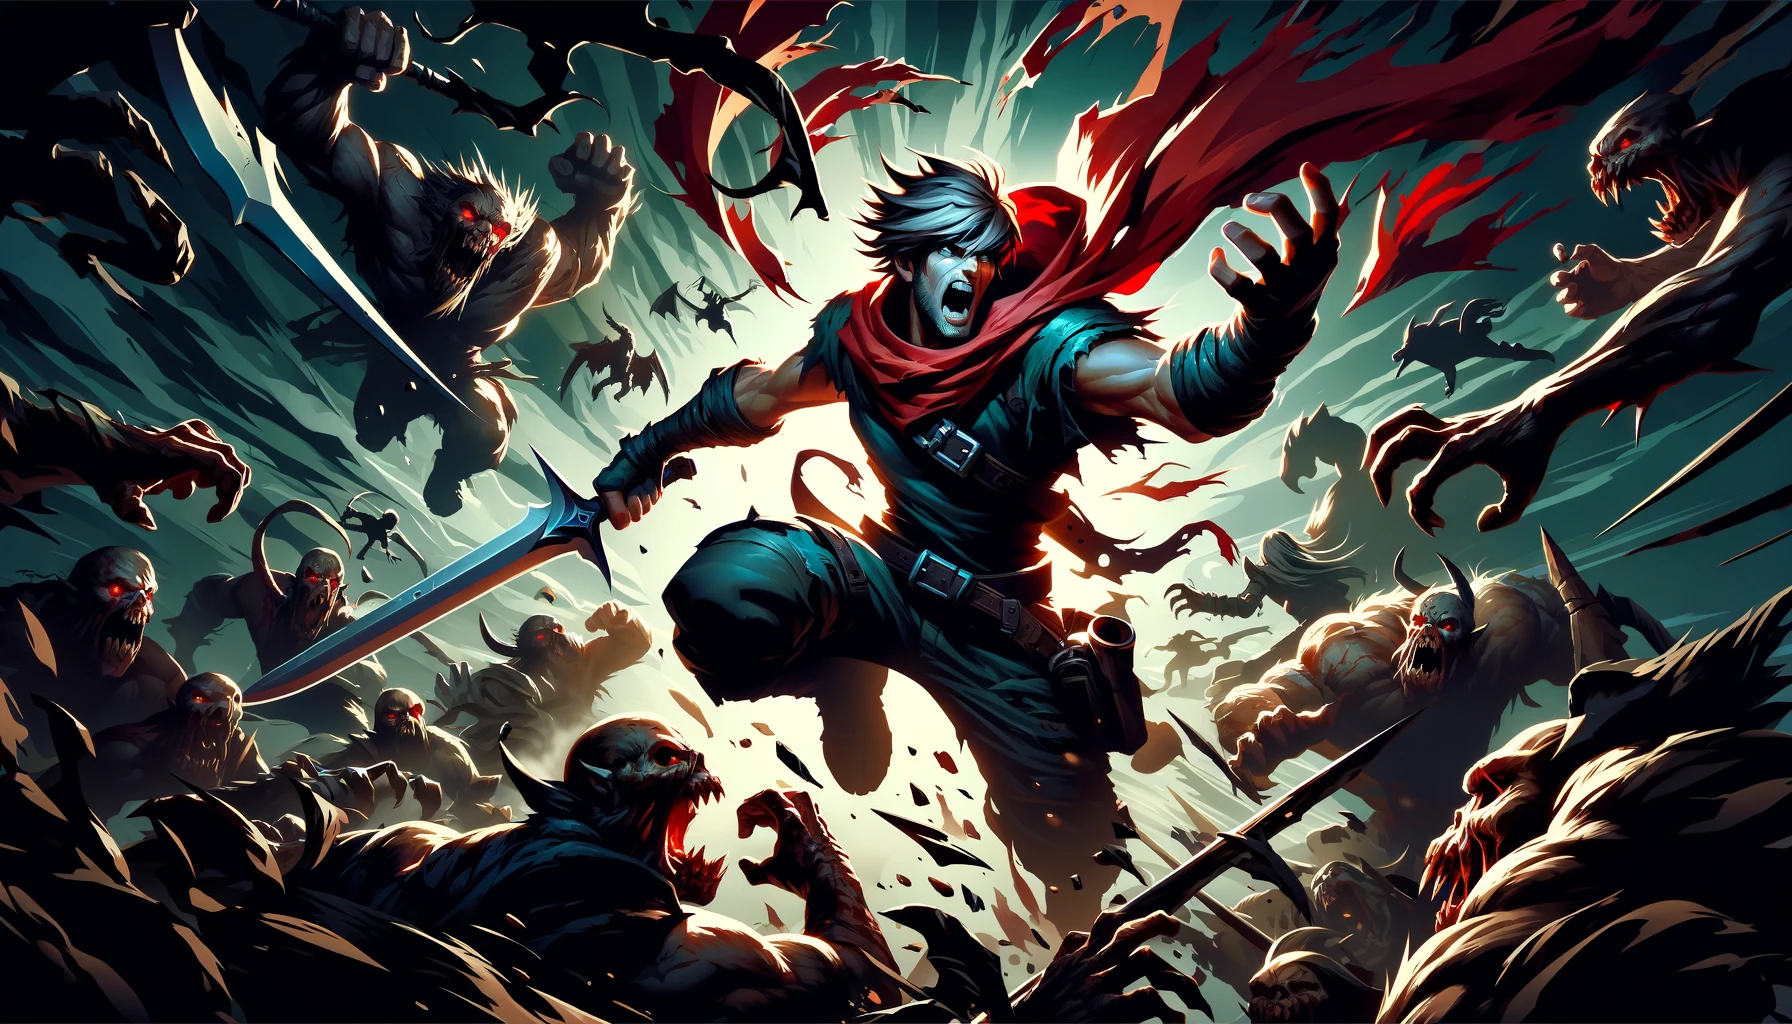 Dynamische und aktionsreiche Darstellung eines Slayer-Helden, der sich durch eine dunkle Monsterhorde kämpft, wobei die Szene die Intensität und den Mut des Kampfes in einem Hack and Slay Videospiel einfängt.